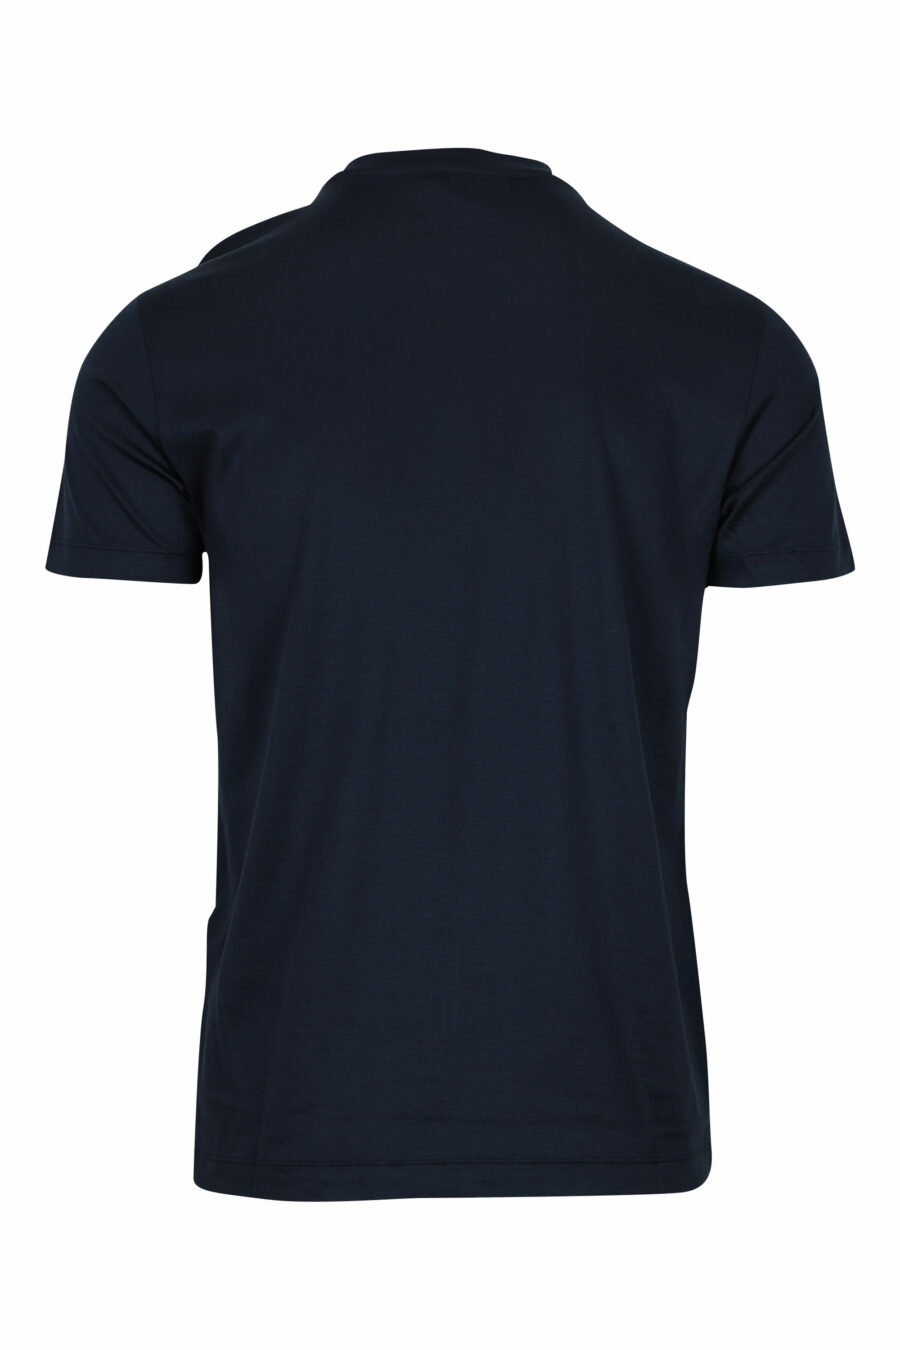 T-shirt bleu foncé avec minilogue "emporio" - 8059516408352